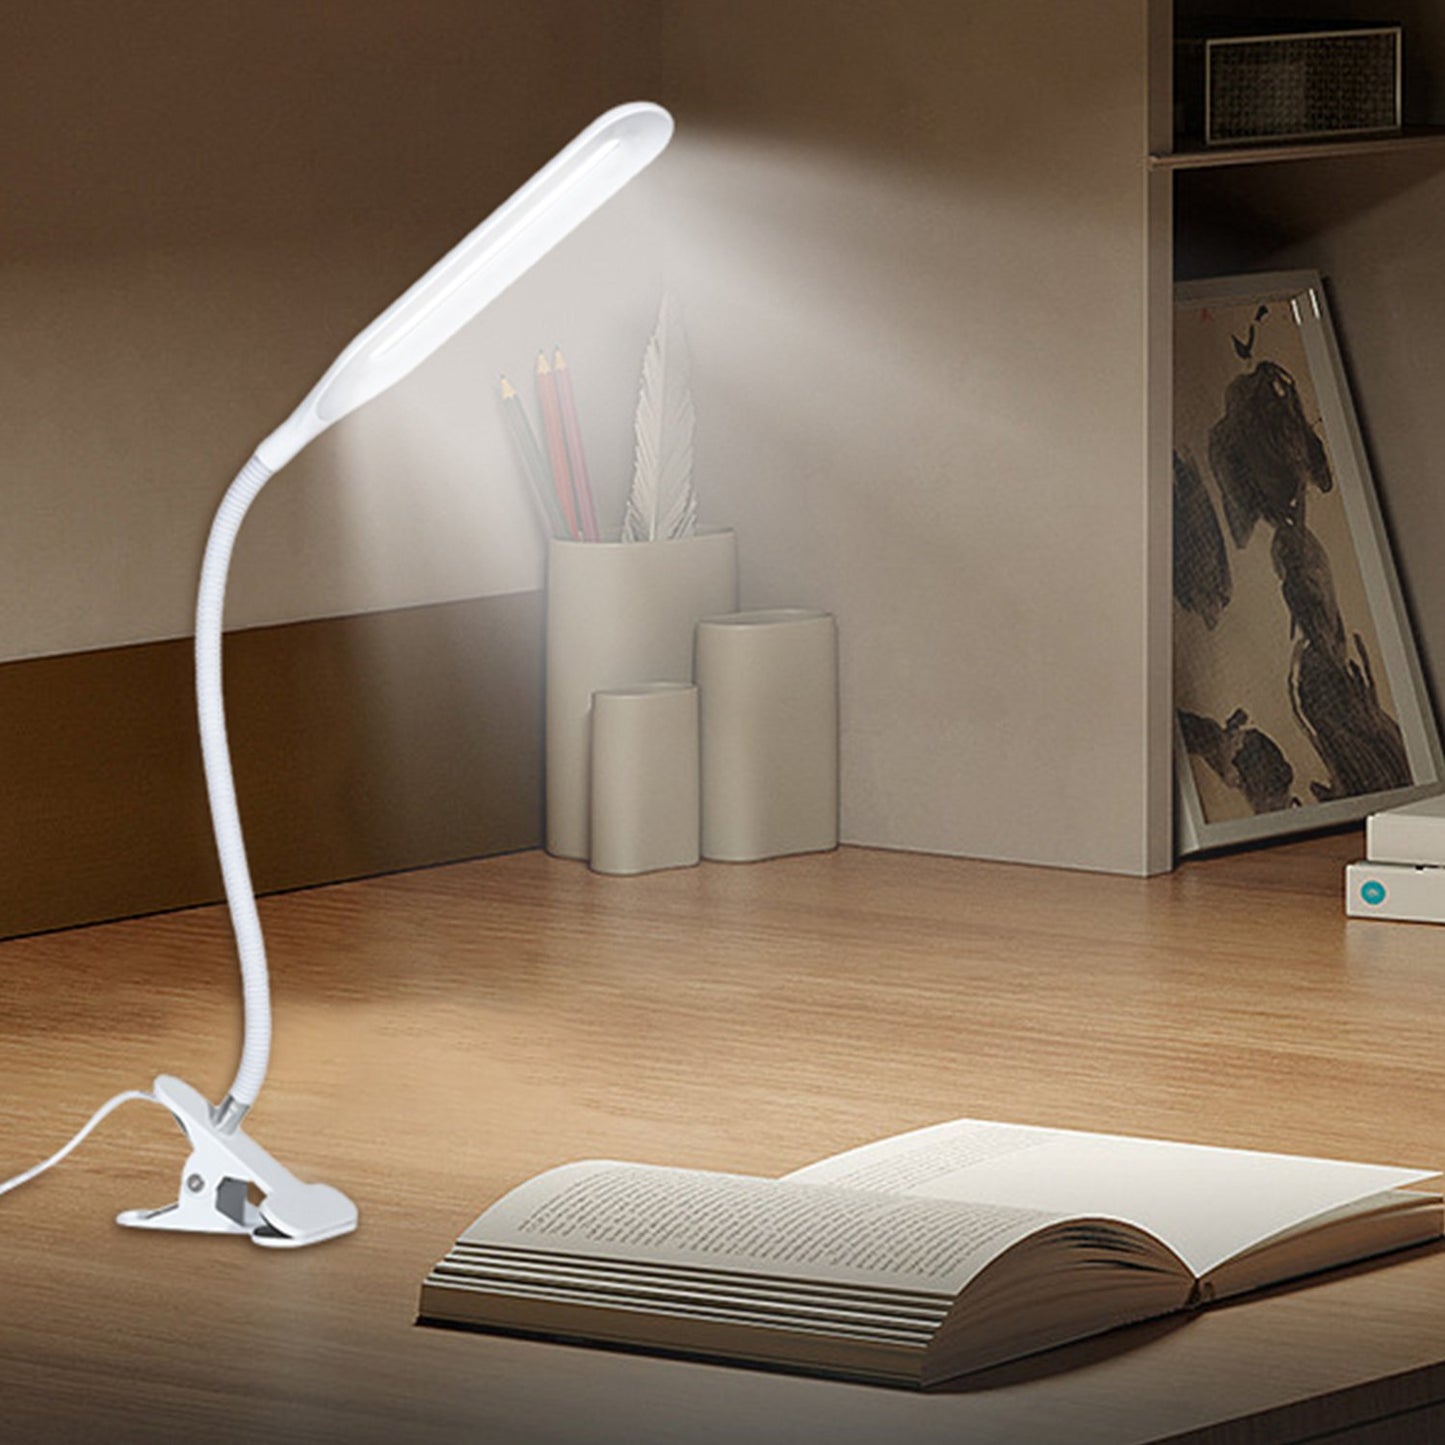 Lampa LED Home DK-6500, cu clema de prindere, brat flexibil, Alimentare USB, Lumina alba, 5W